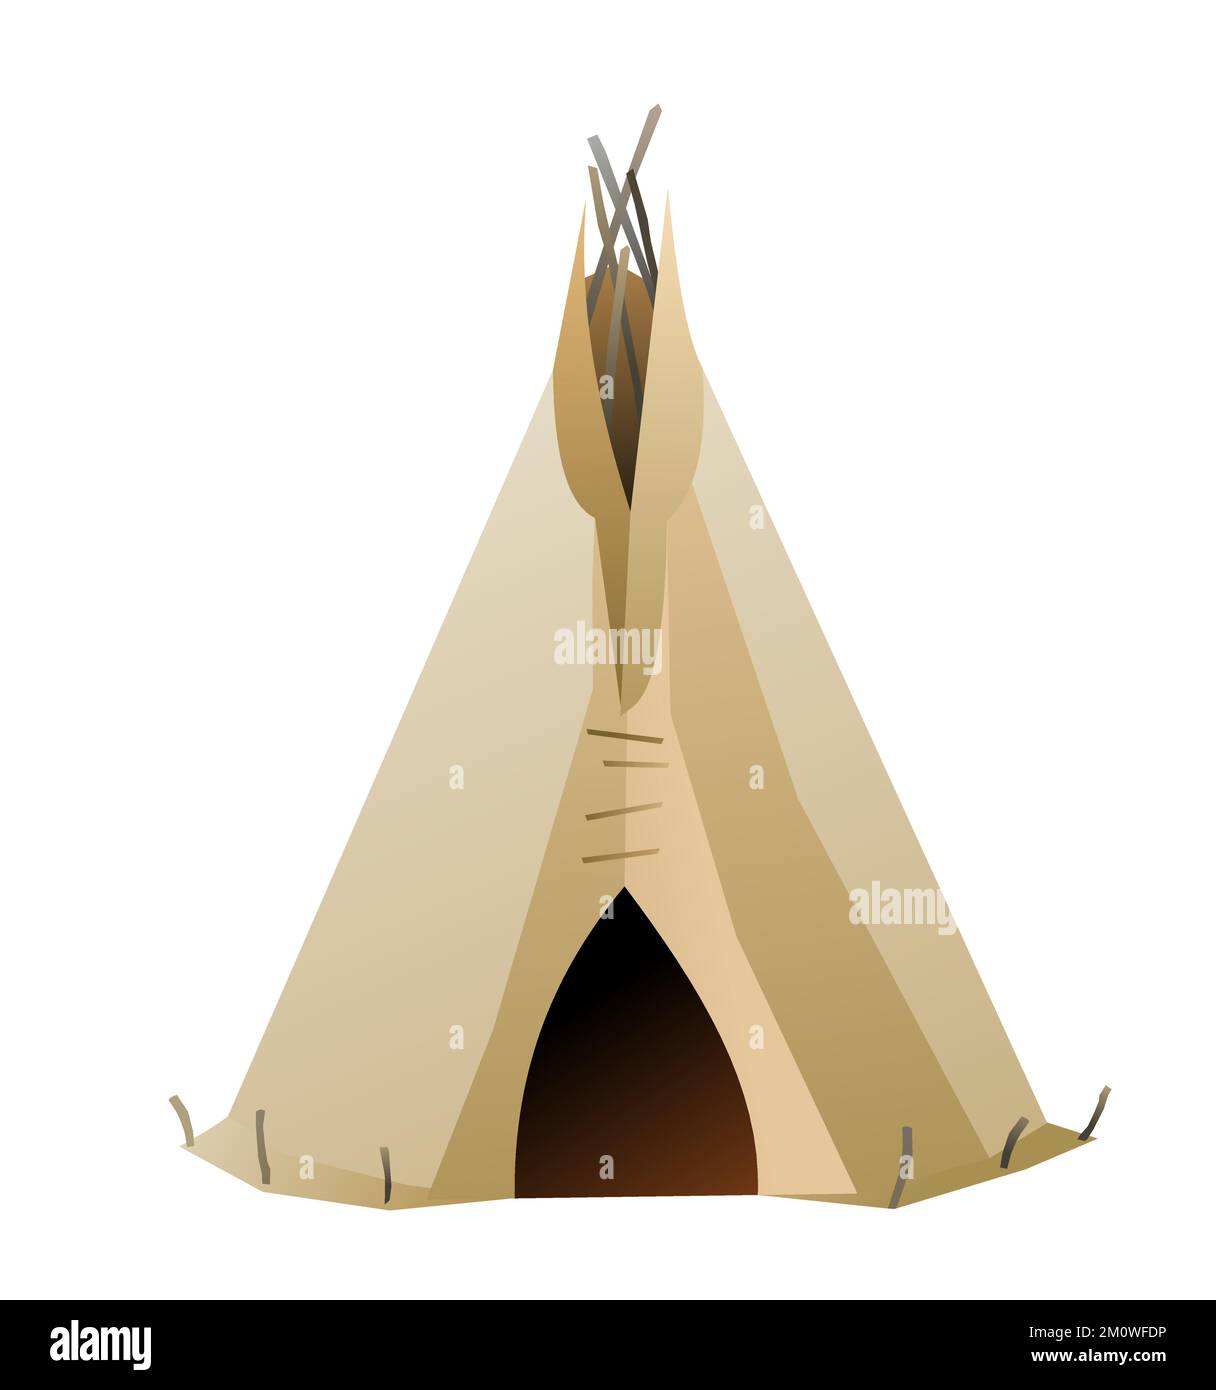 Cabane à wigwam indienne en feutre et peaux. Habitation tribale nord-américaine. Maison traditionnelle des peuples nomades. Isolé sur fond blanc vecteur. Illustration de Vecteur